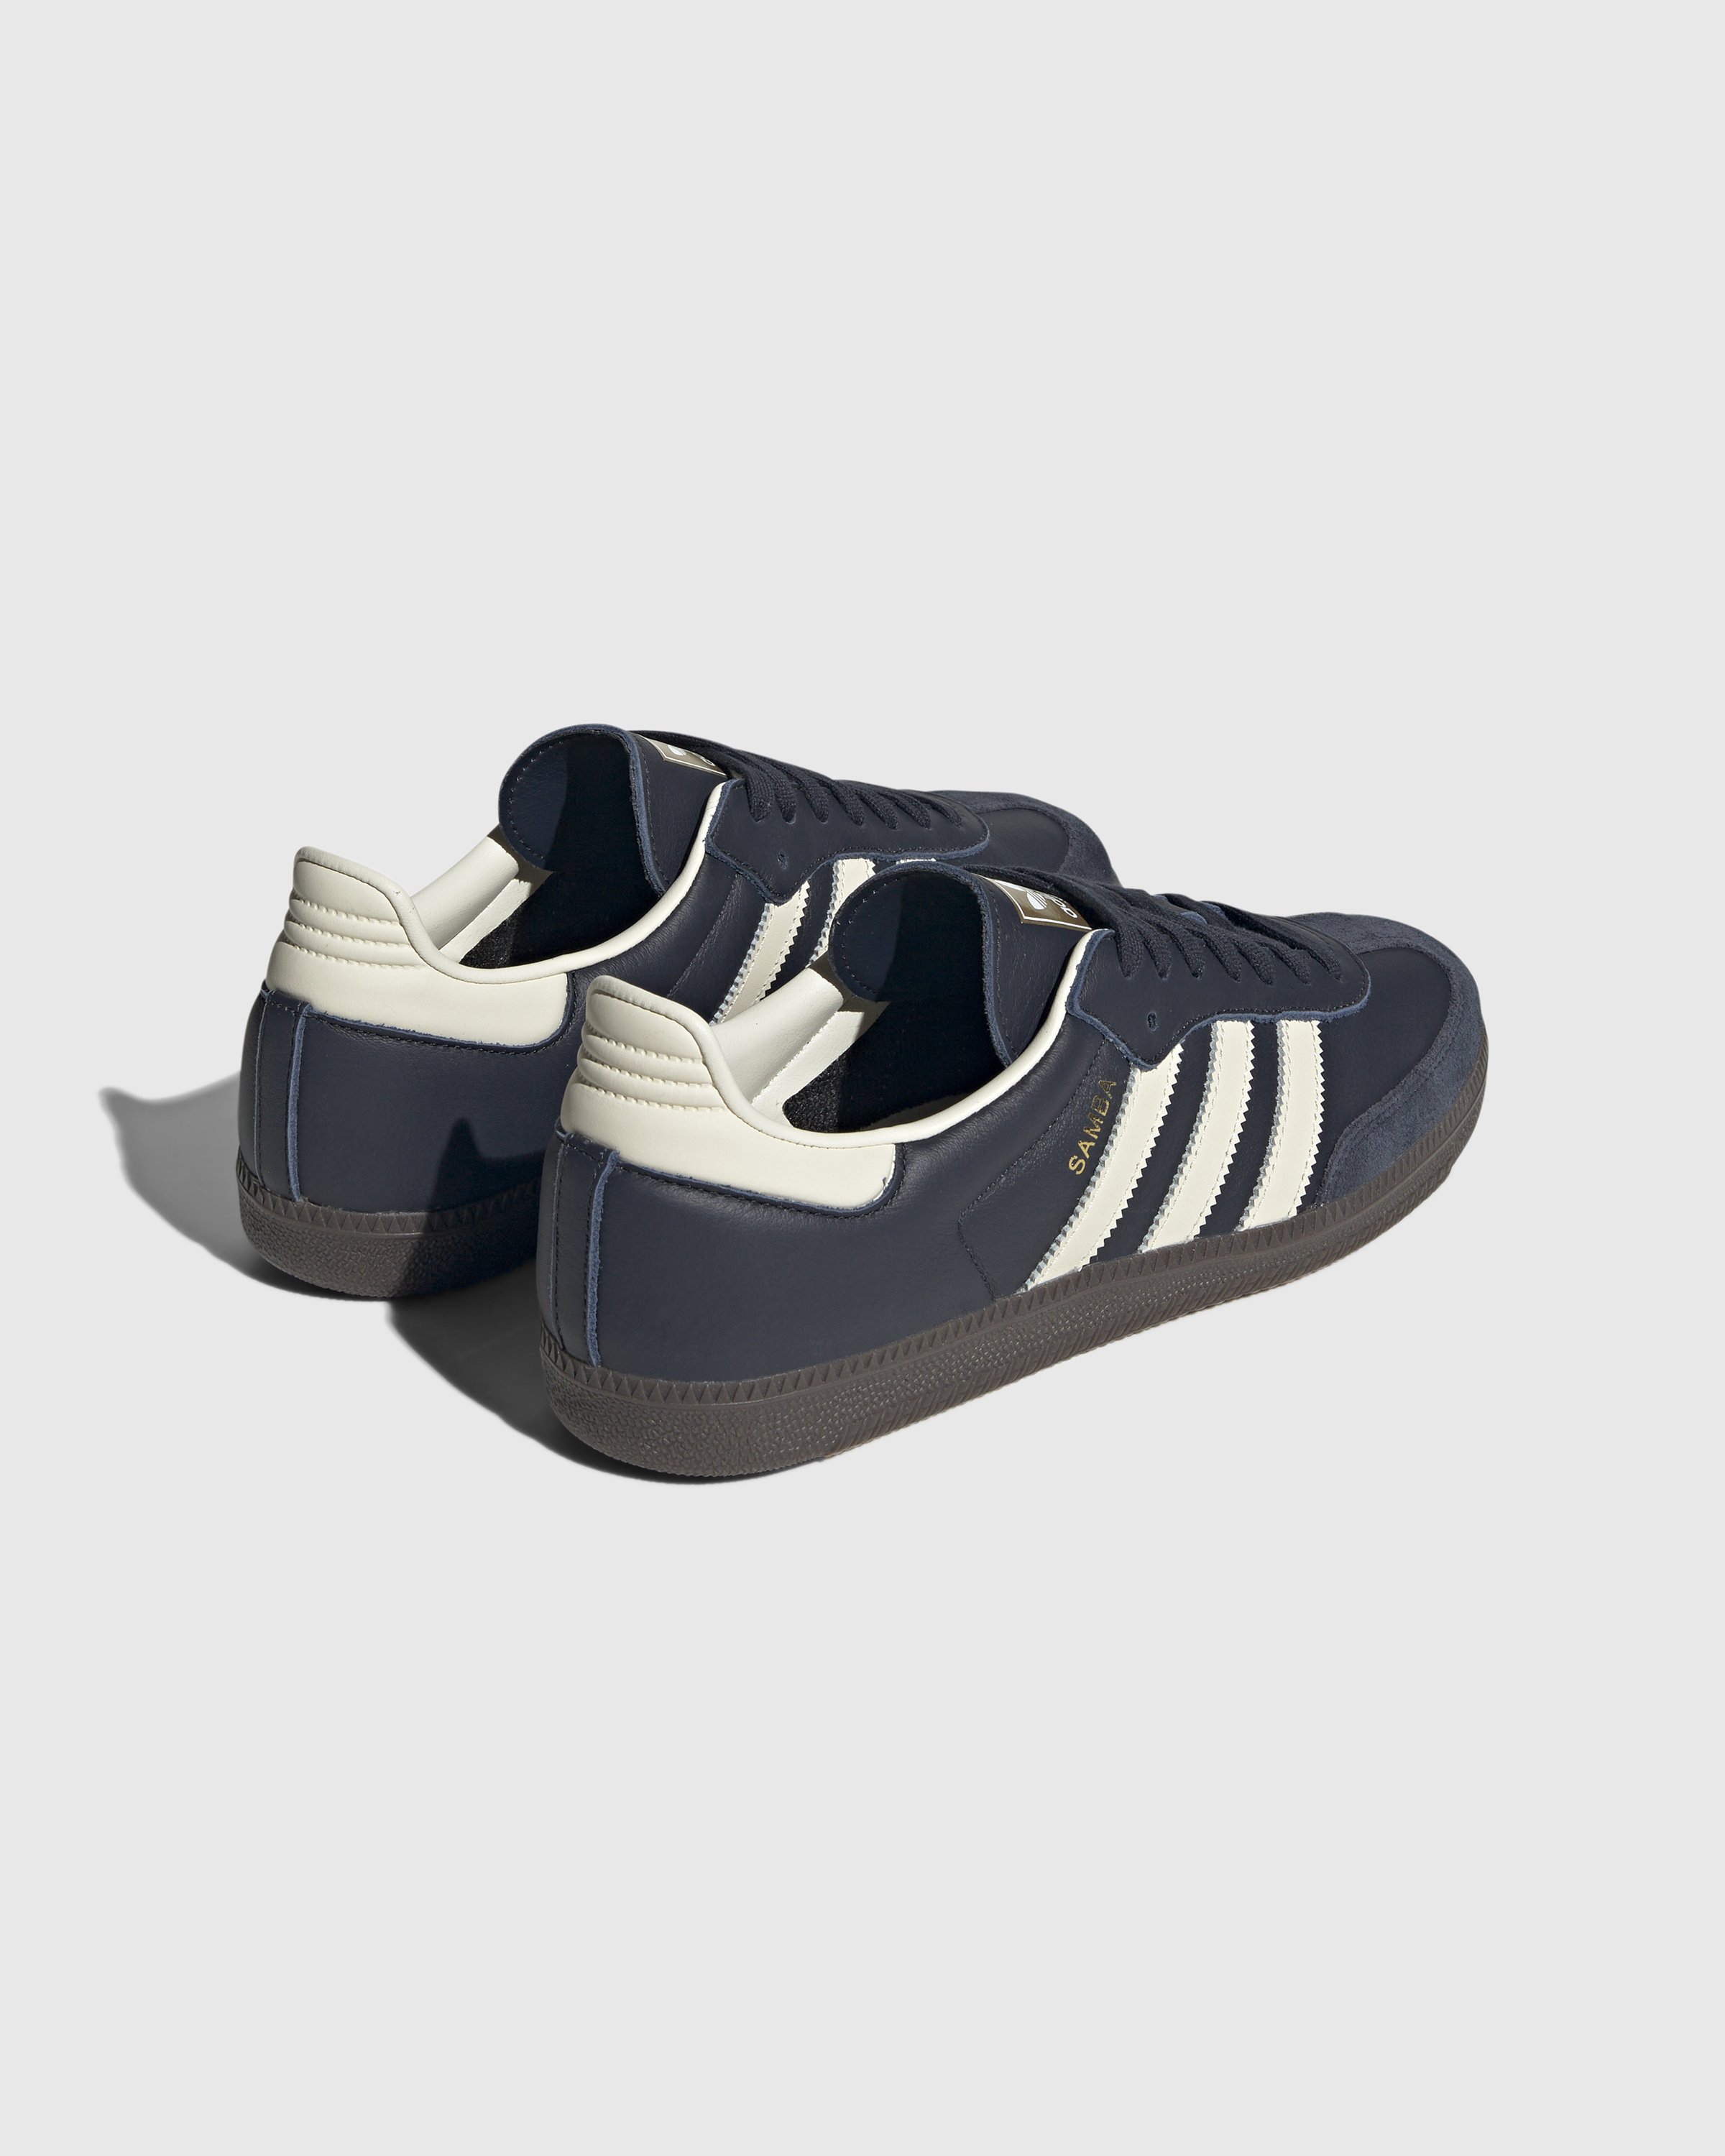 Adidas - Samba OG Navy White  - Footwear - Blue - Image 3